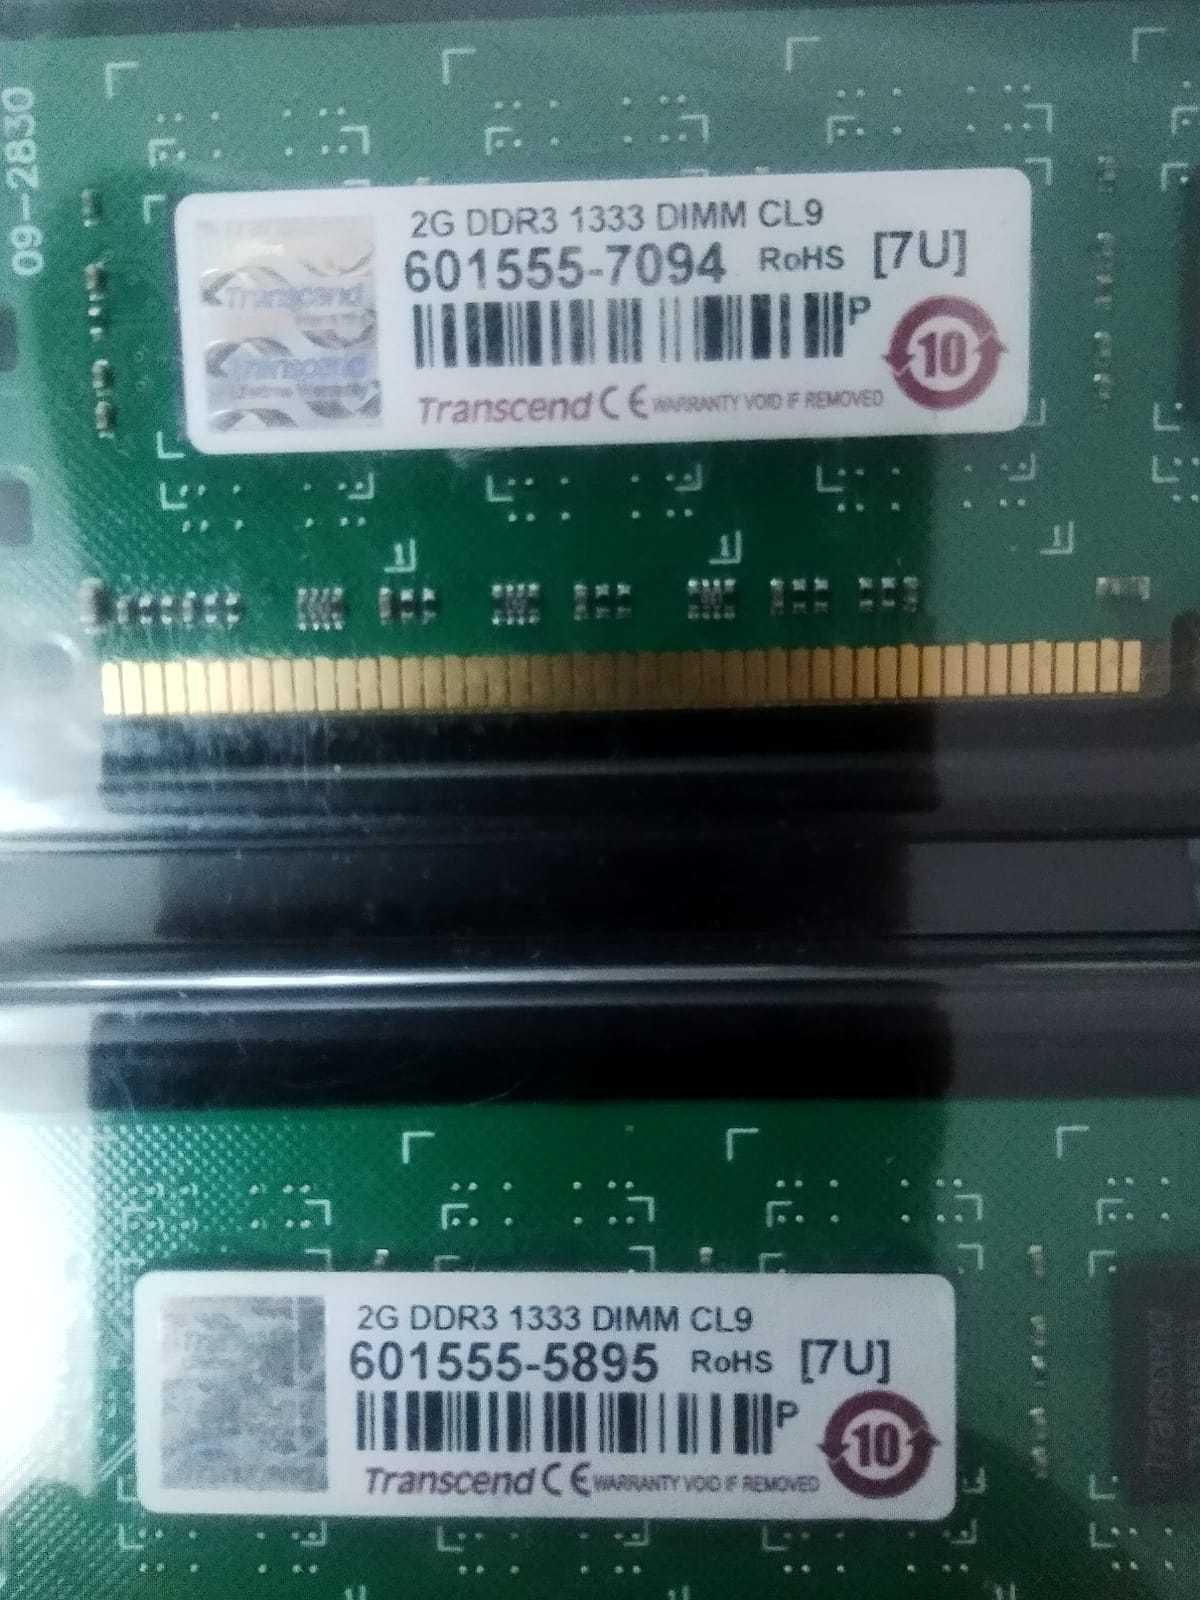 ASUS B85M-V5+/BIOSTAR H81MHV3/i5-2300/i3-530/2G DDR3 1333 все за 12К